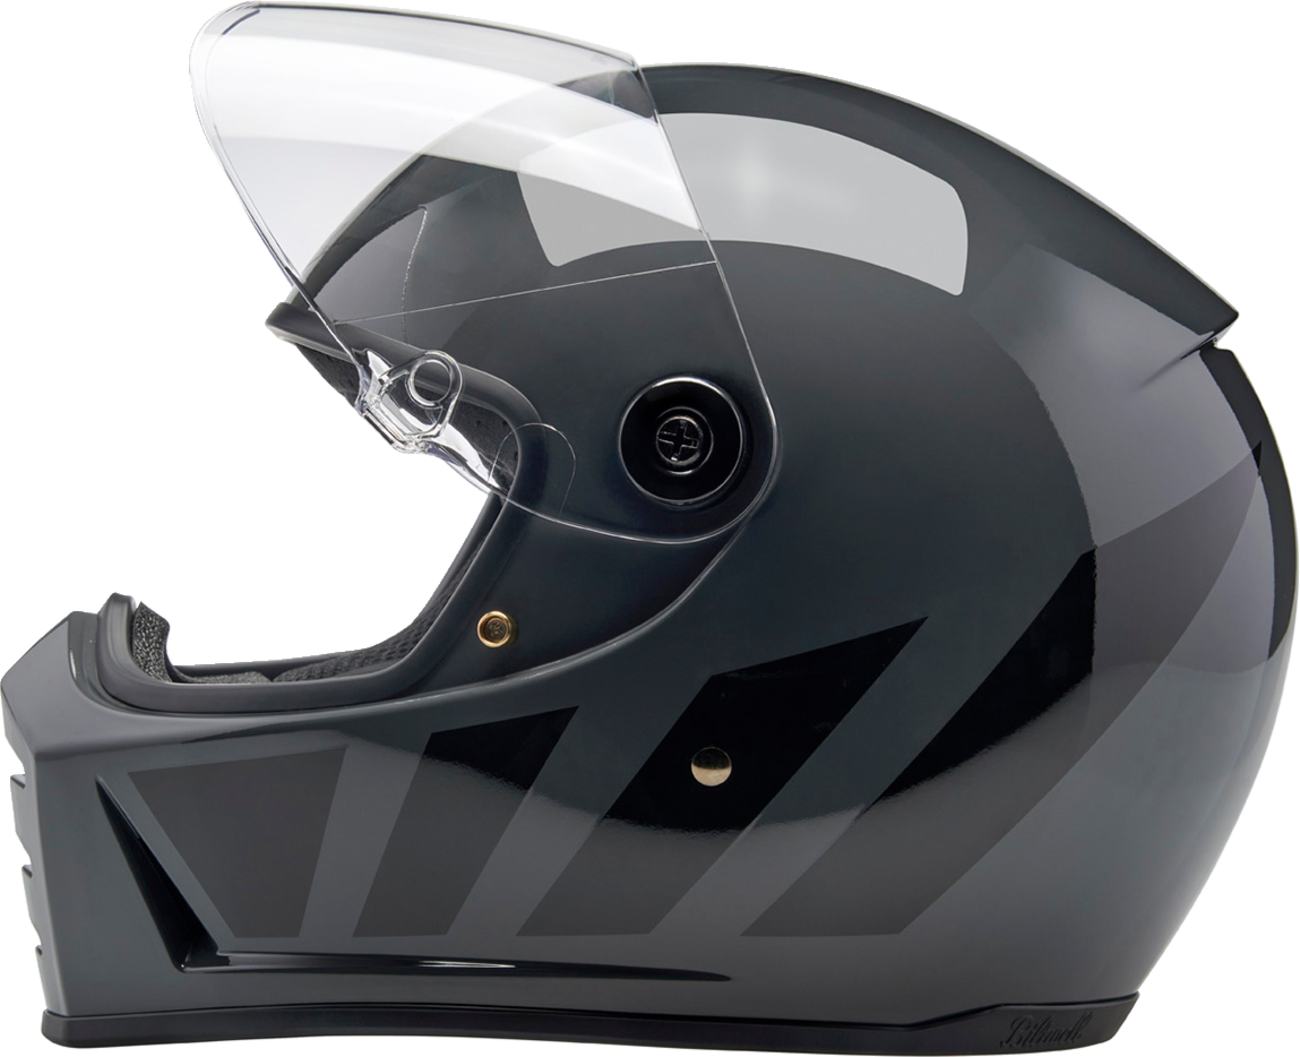 BILTWELL Lane Splitter Helmet - Storm Gray Inertia - XS 1004-569-501